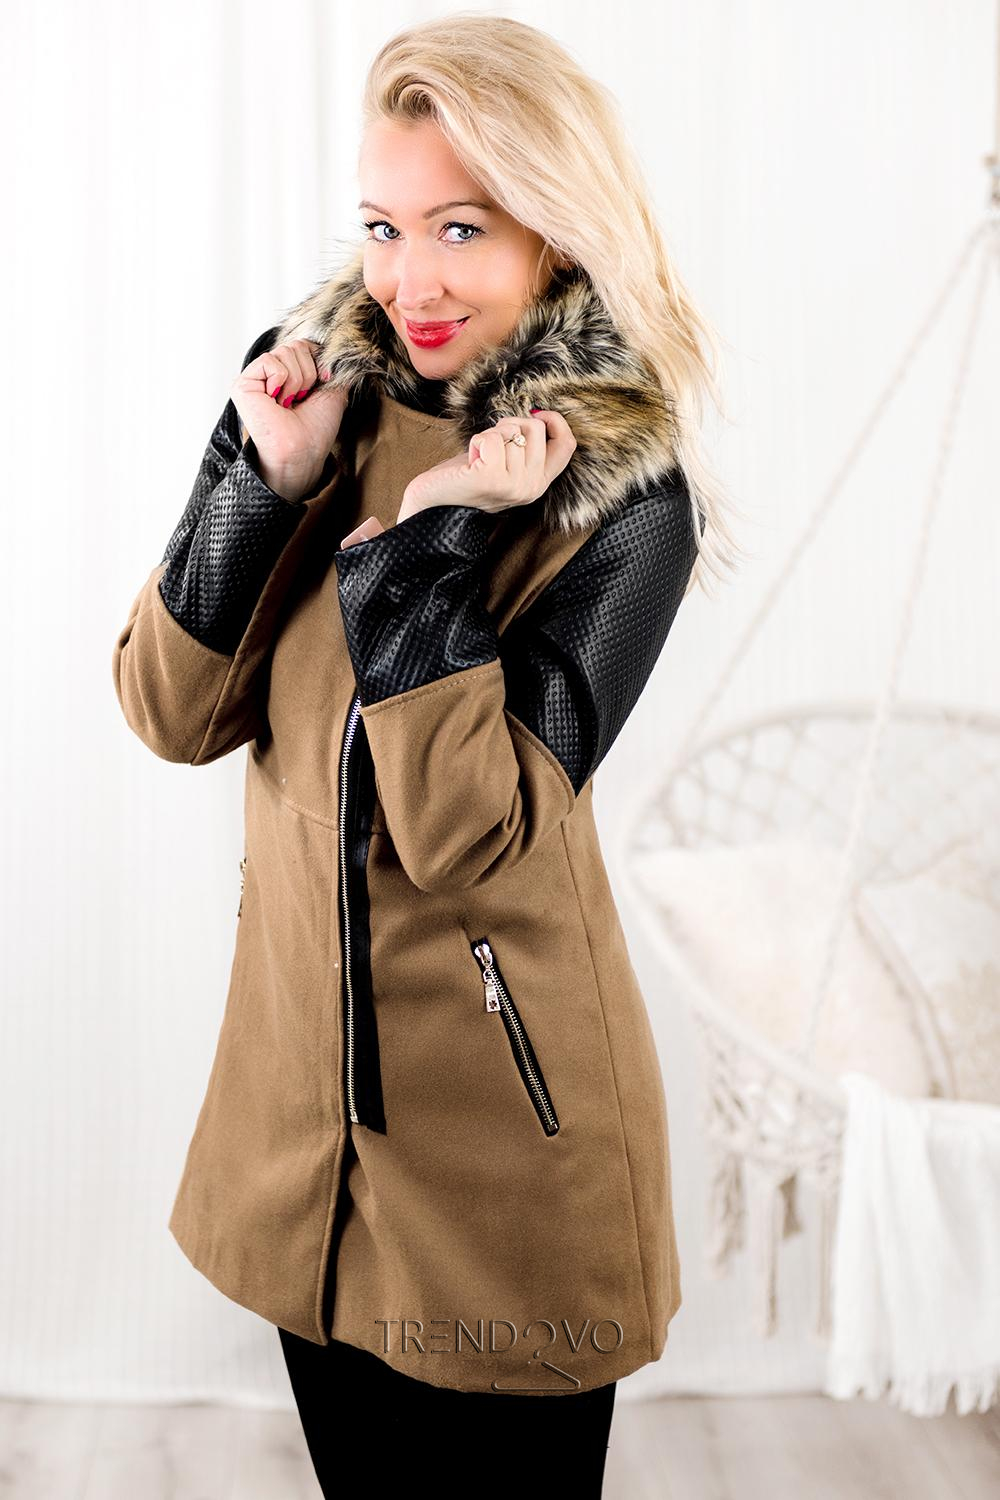 Béžový zimný kabát s kožušinovou podšívkou